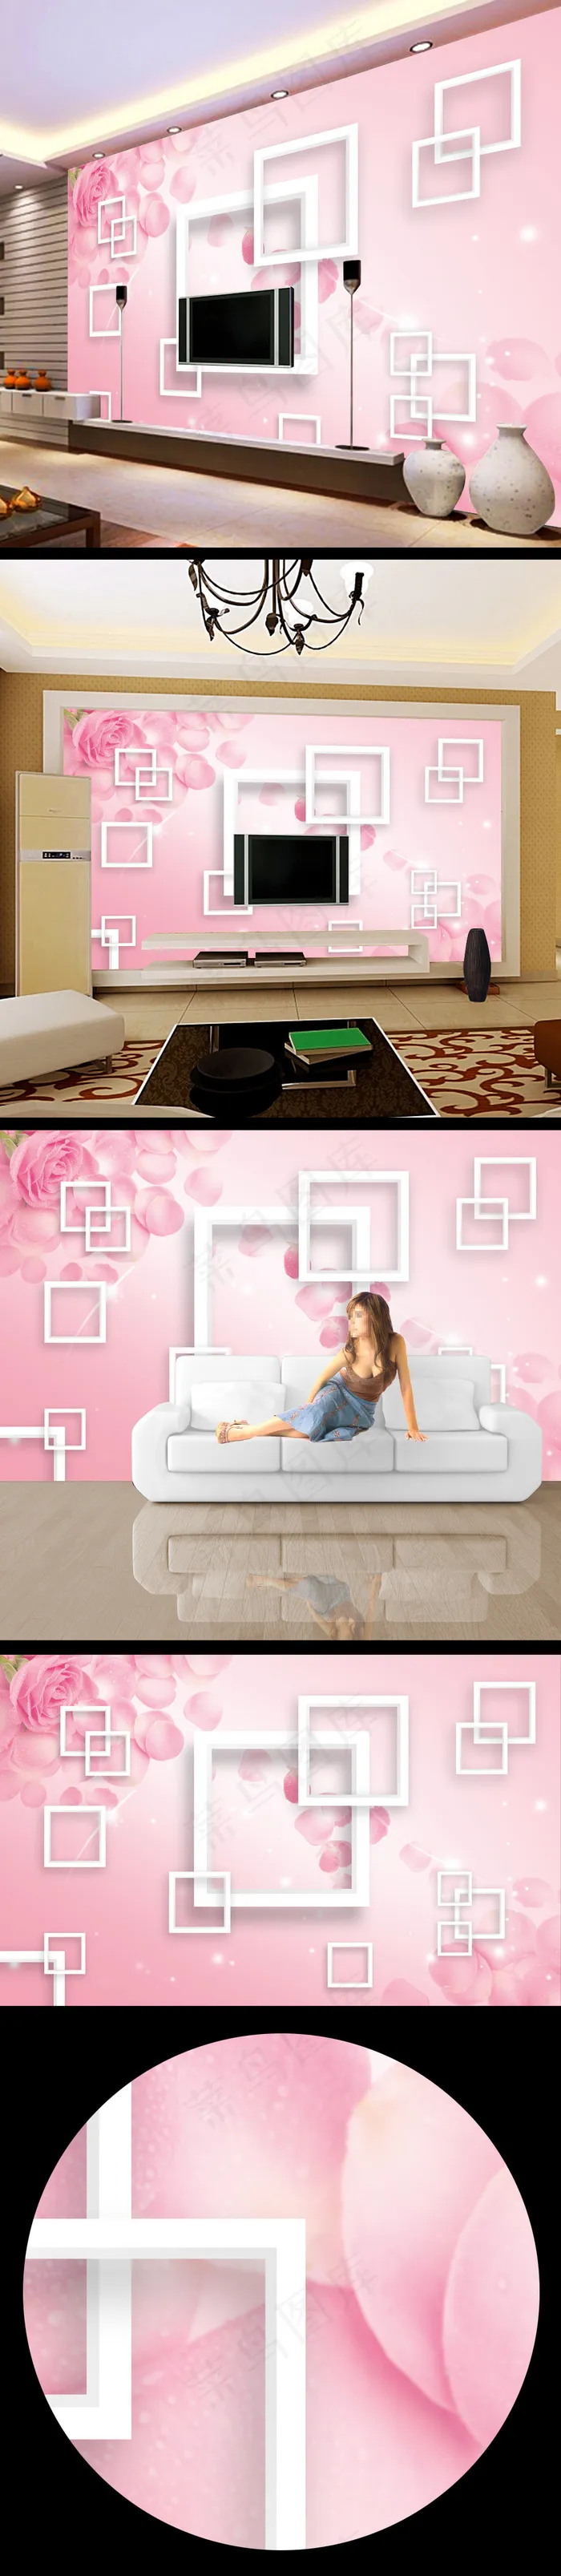 粉红色清雅3d壁画设计